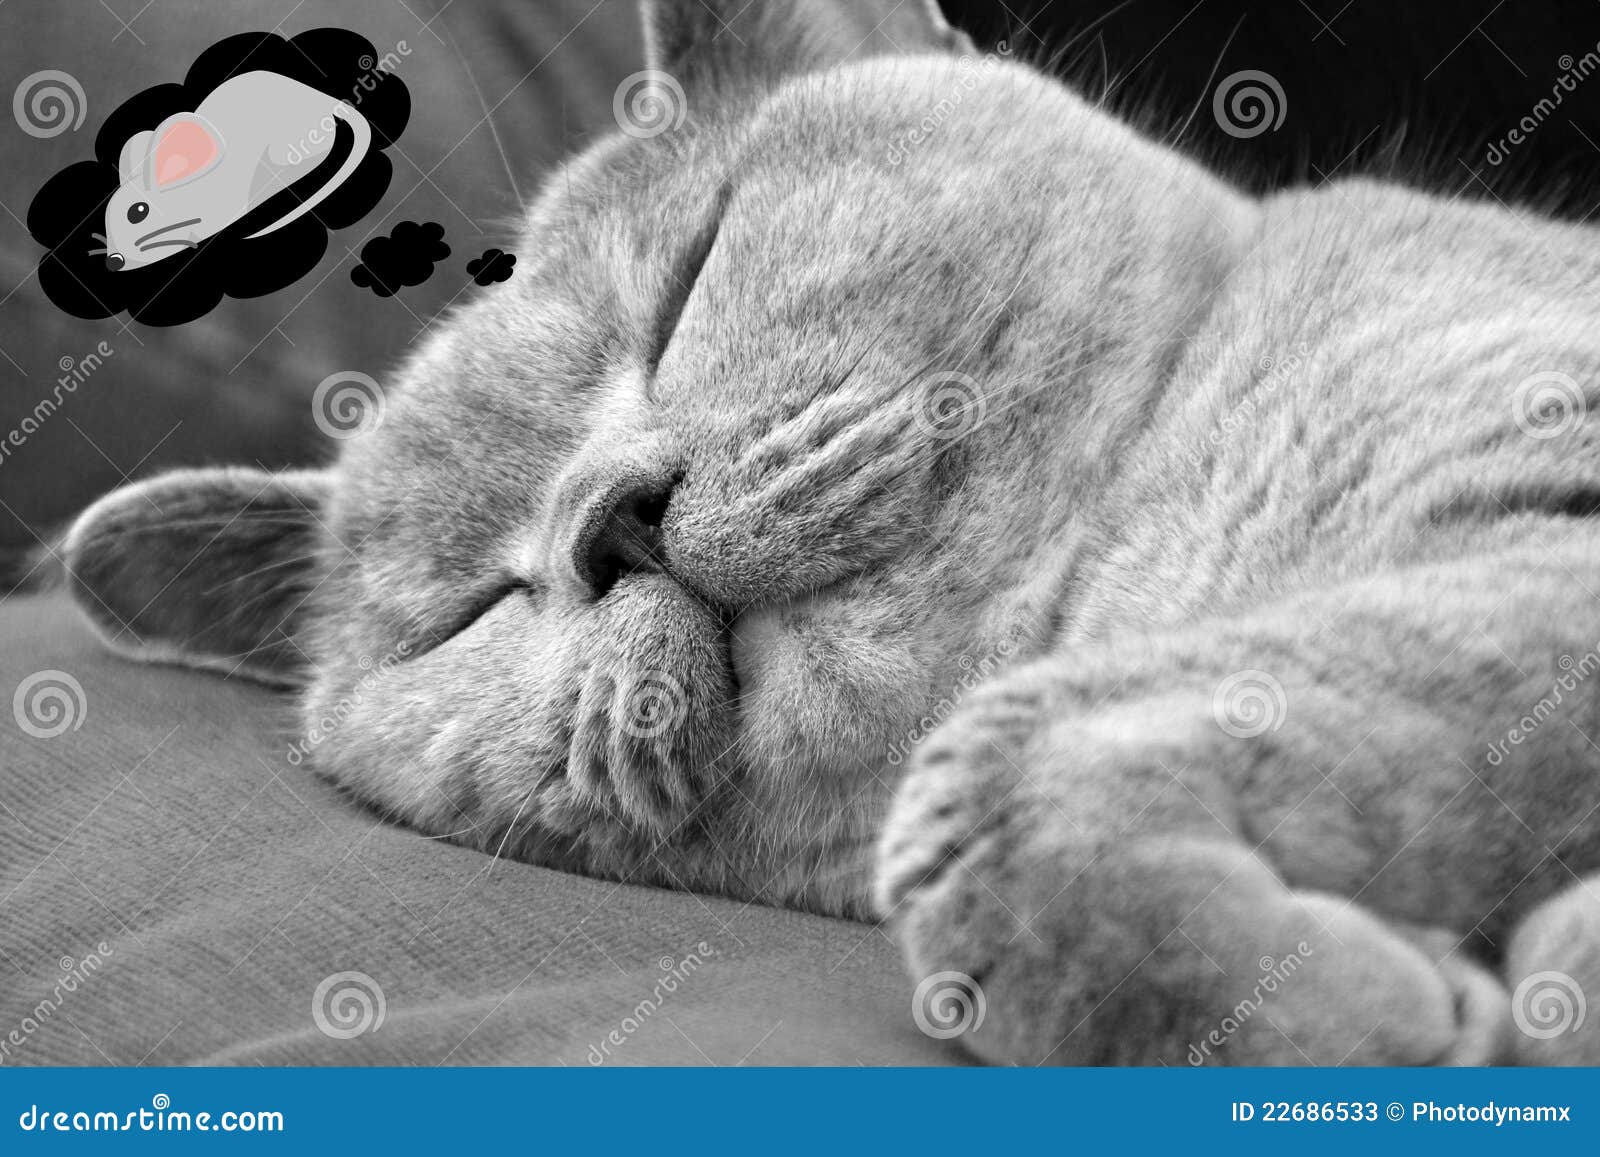 sleeping-cat-dreaming-mice-22686533.jpg